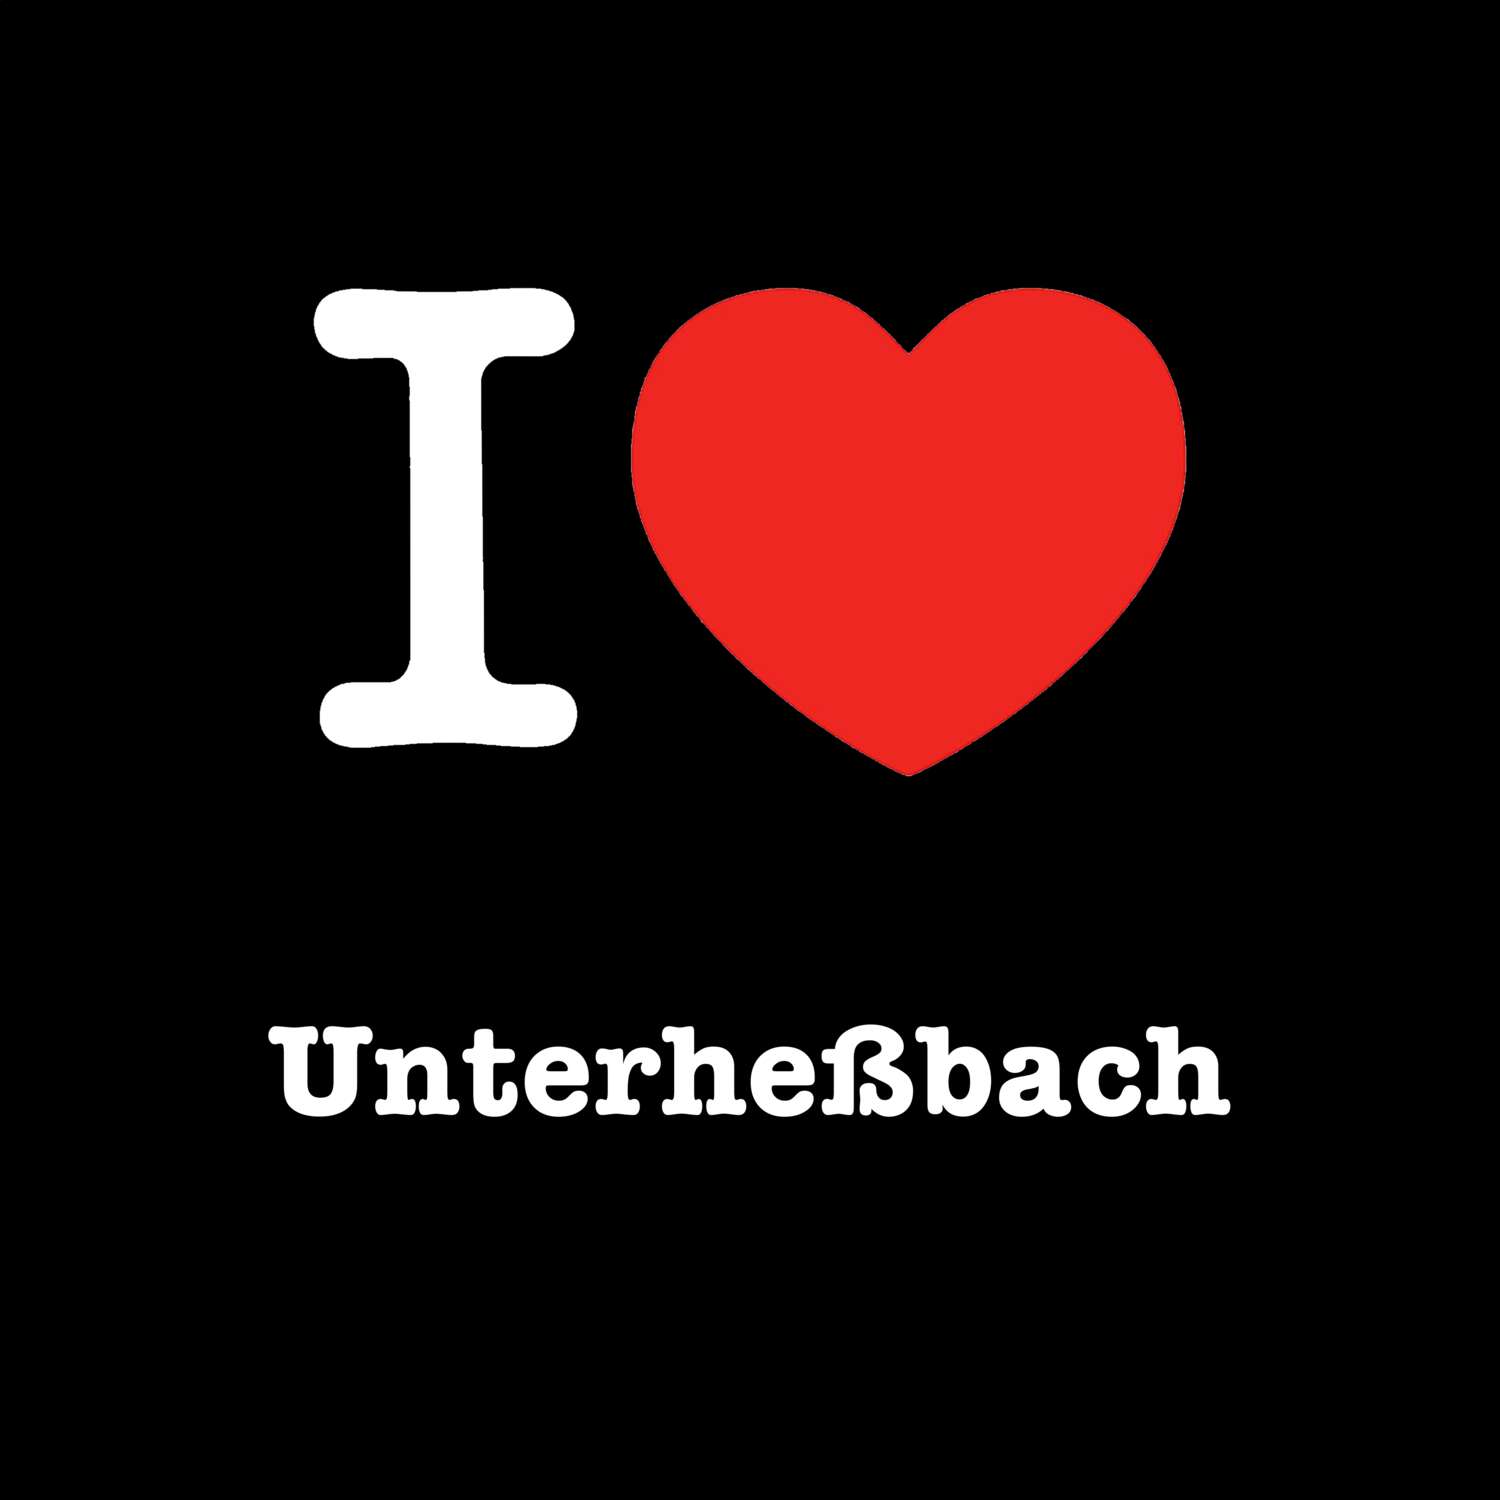 Unterheßbach T-Shirt »I love«